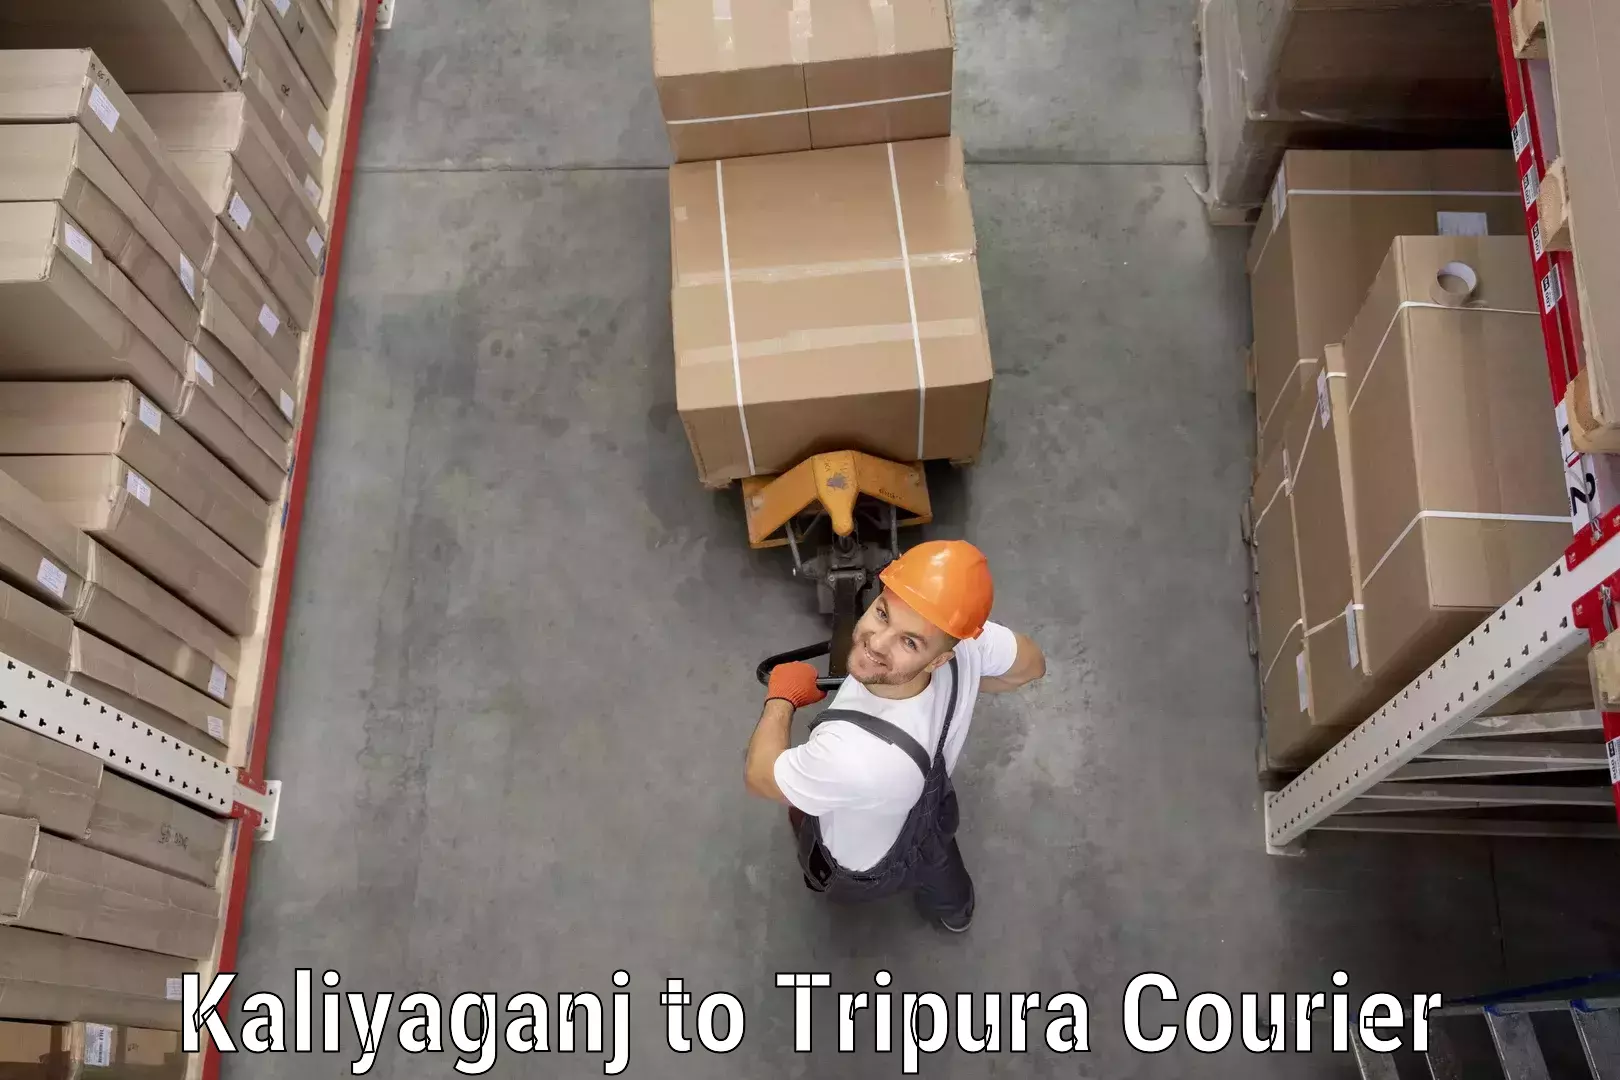 Courier app Kaliyaganj to Udaipur Tripura